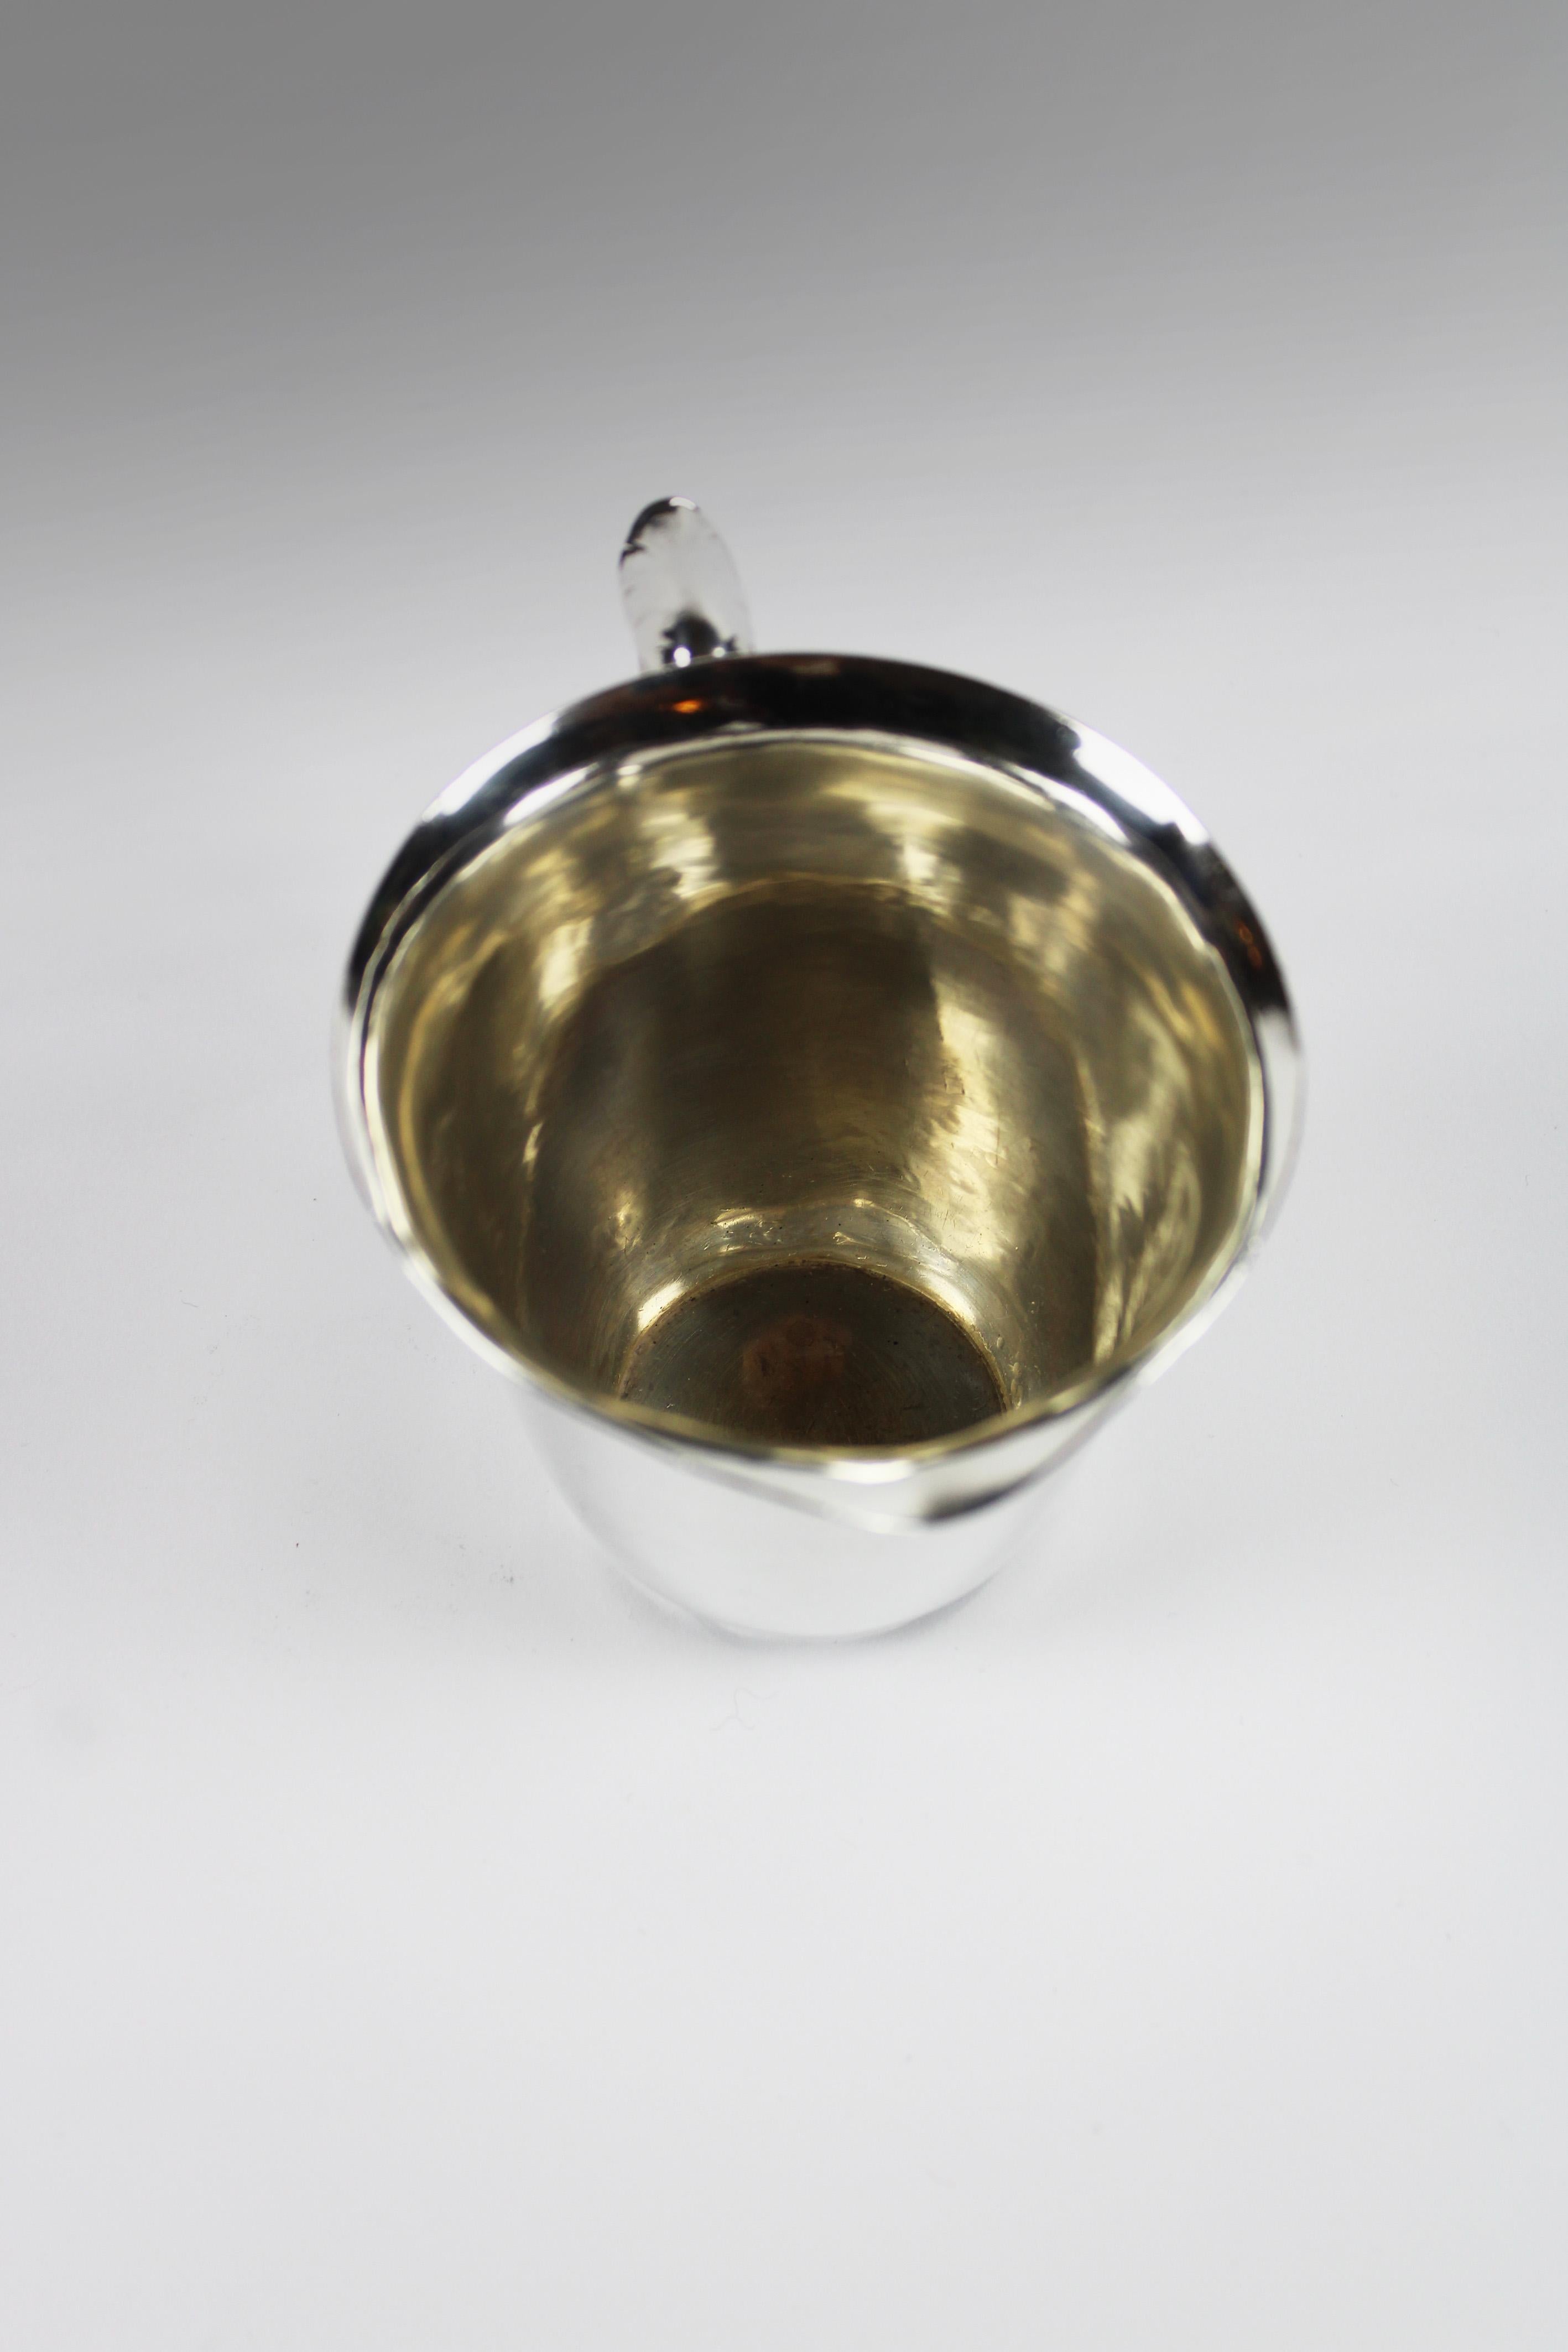 Voici un pot à crème en argent sterling entièrement poinçonné, fabriqué par le célèbre fabricant Georg Jensen, conçu par Harald Nielsen en 1938. Cet élégant pot à crème illustre le savoir-faire renommé de Georg Jensen et son design intemporel. Cette